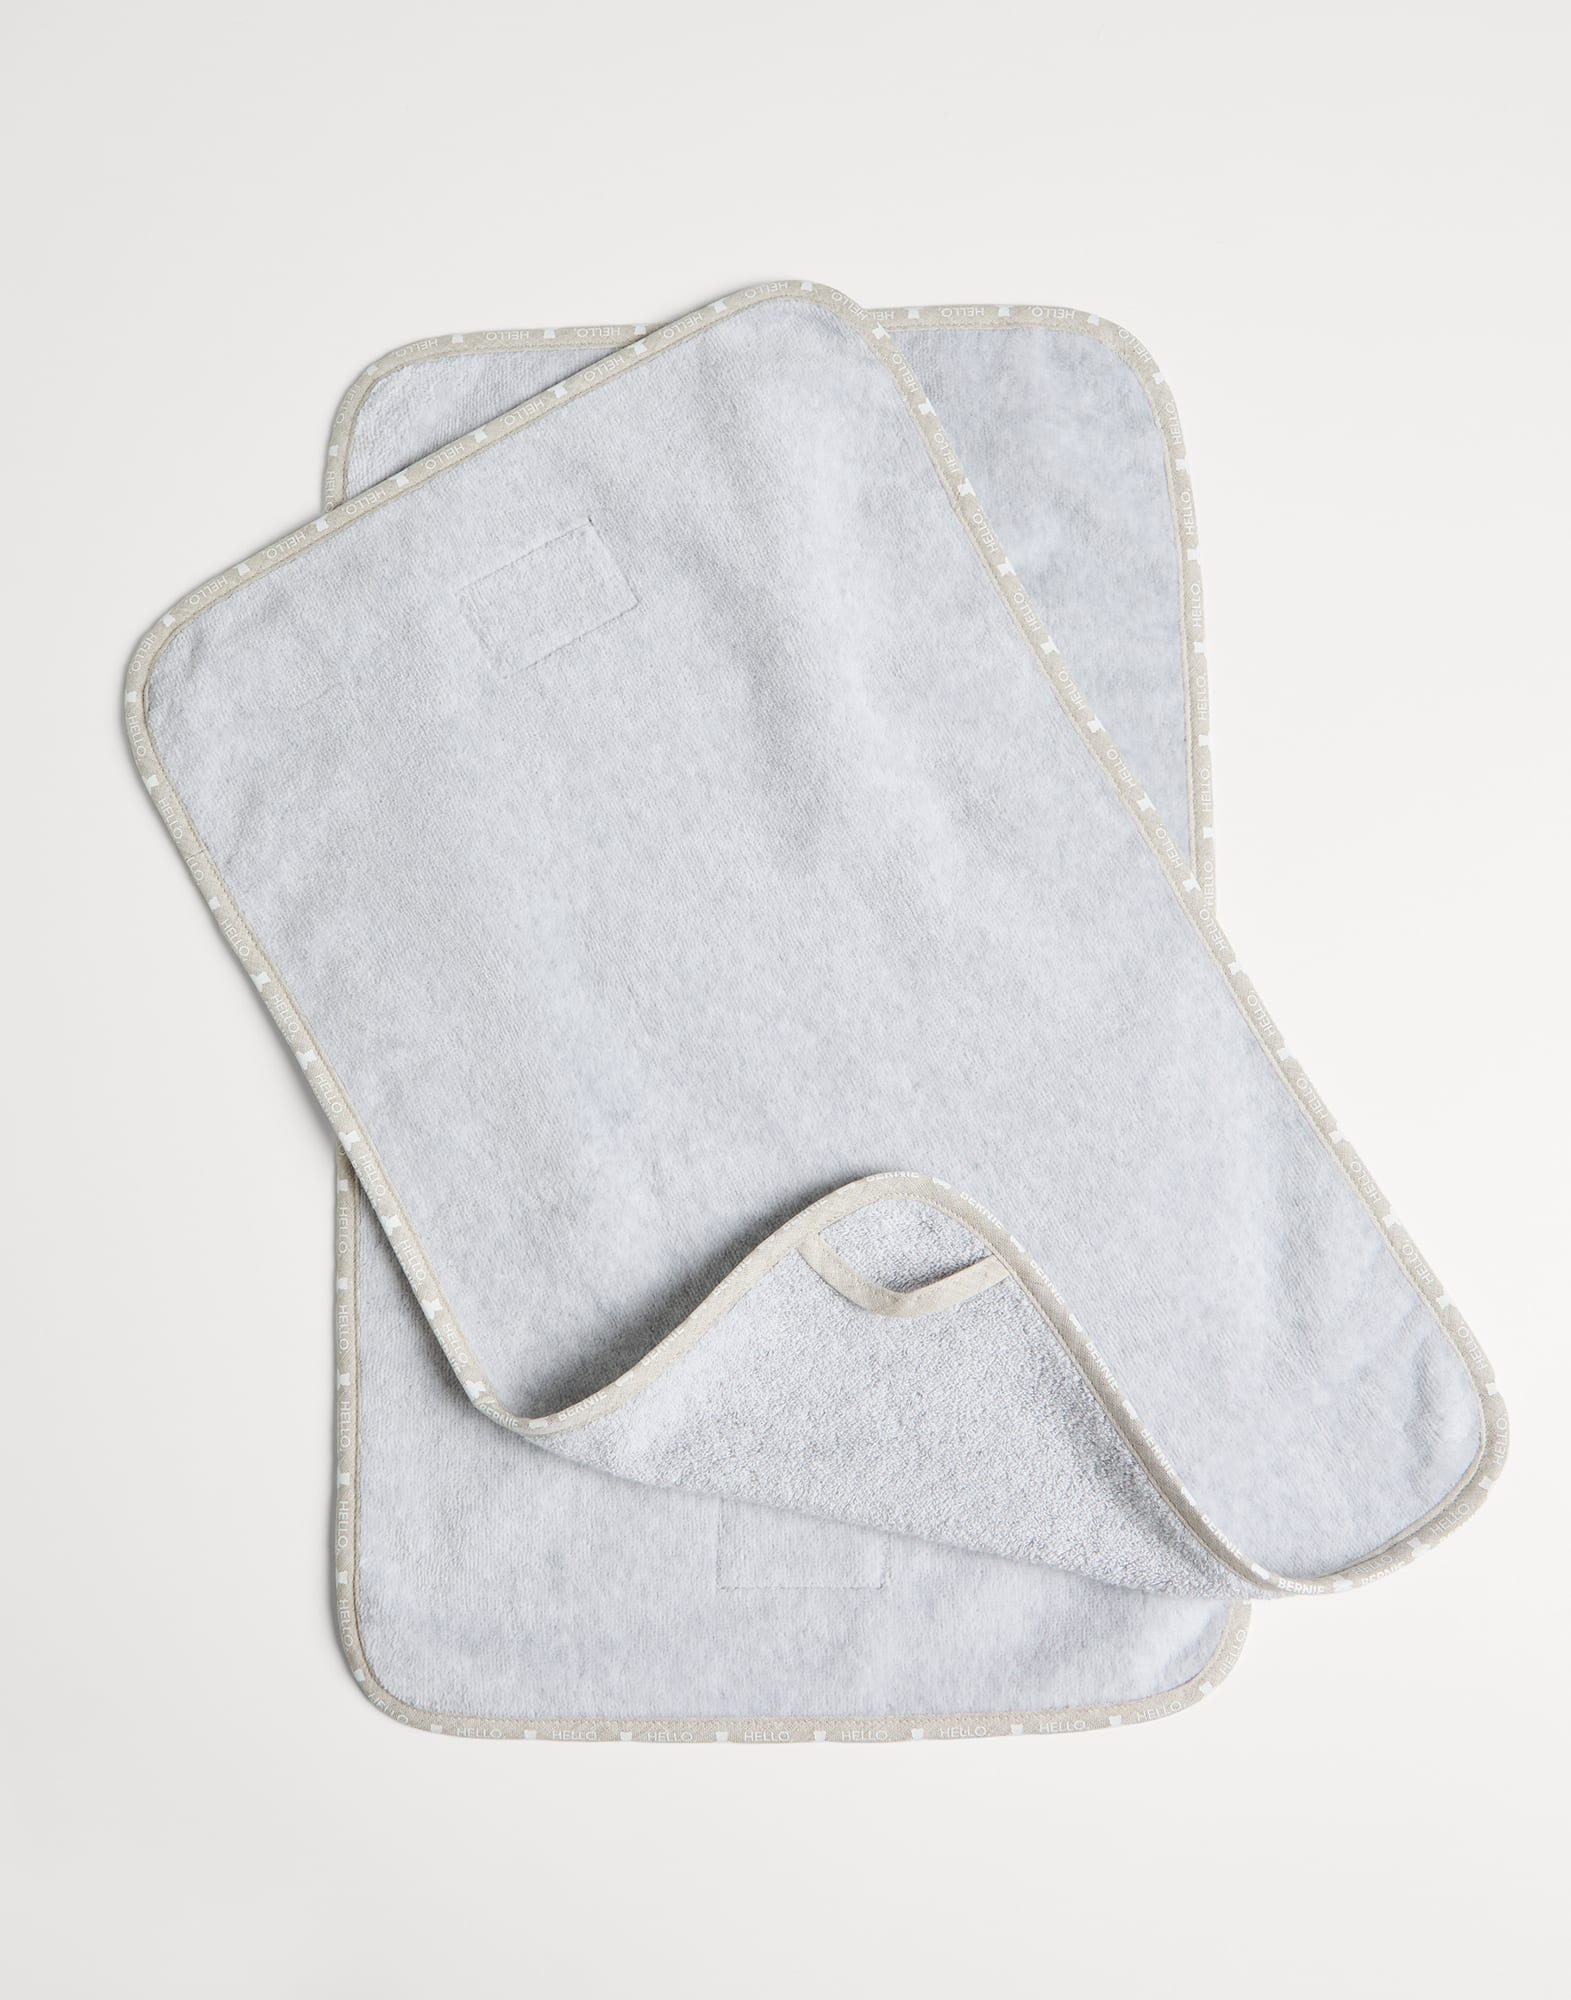 2-piece towel set